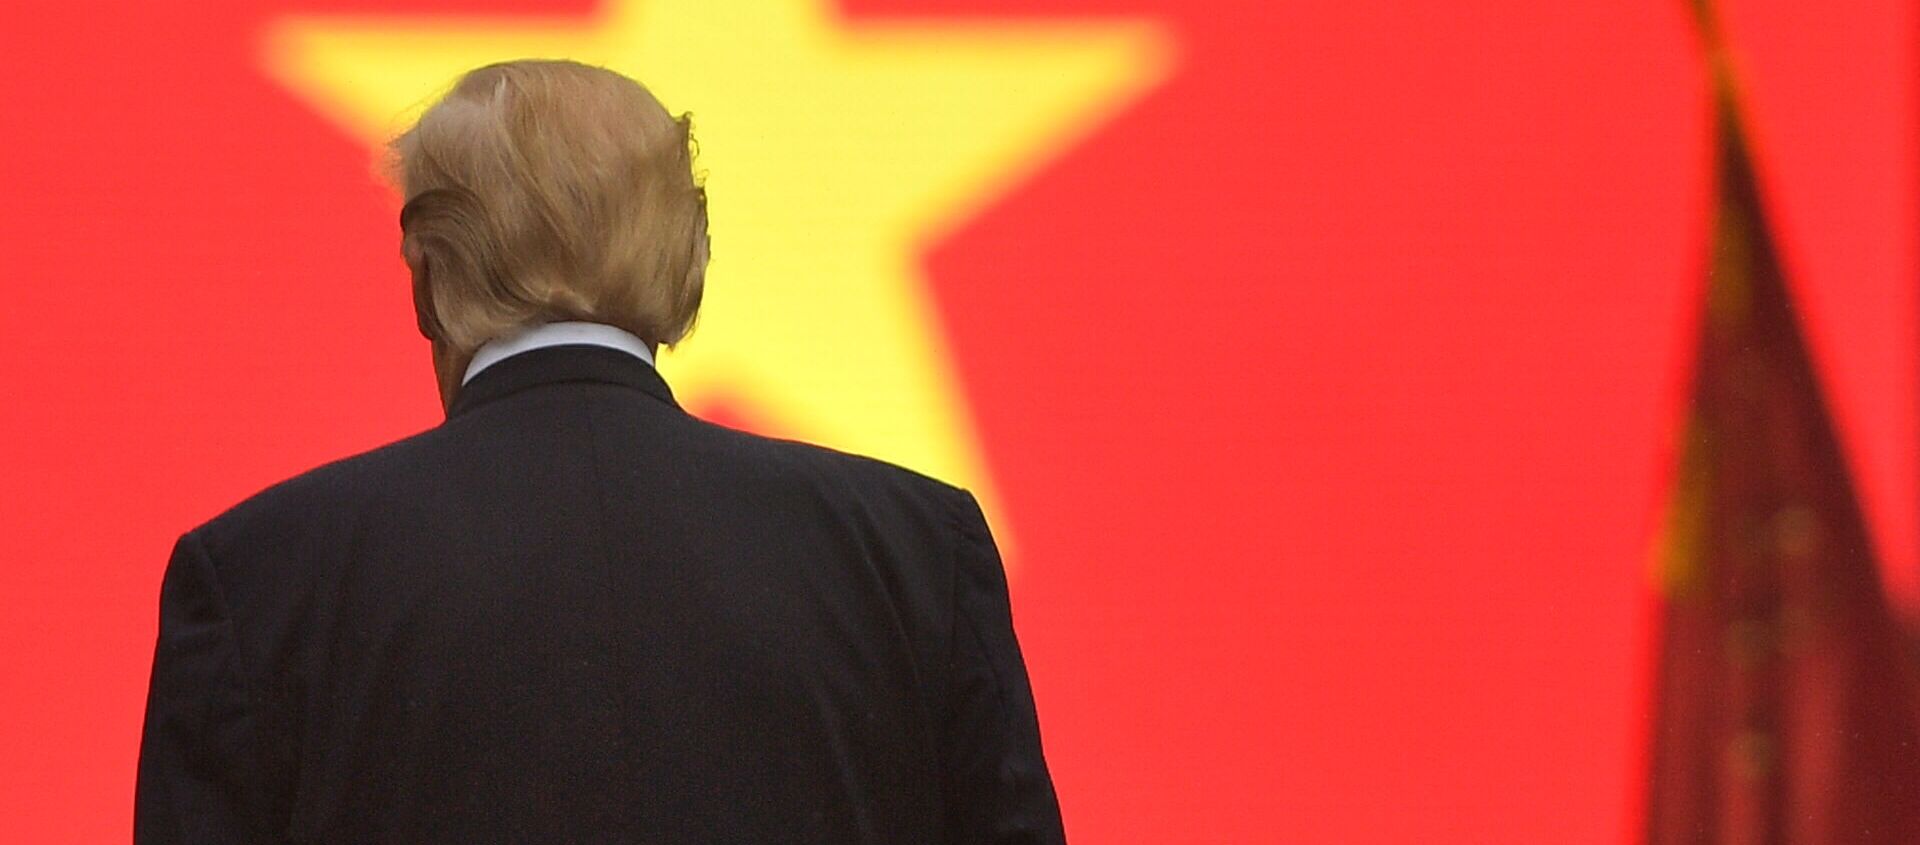 Tổng thống Mỹ Donald Trump trước quốc kỳ Việt Nam - Sputnik Việt Nam, 1920, 22.12.2020